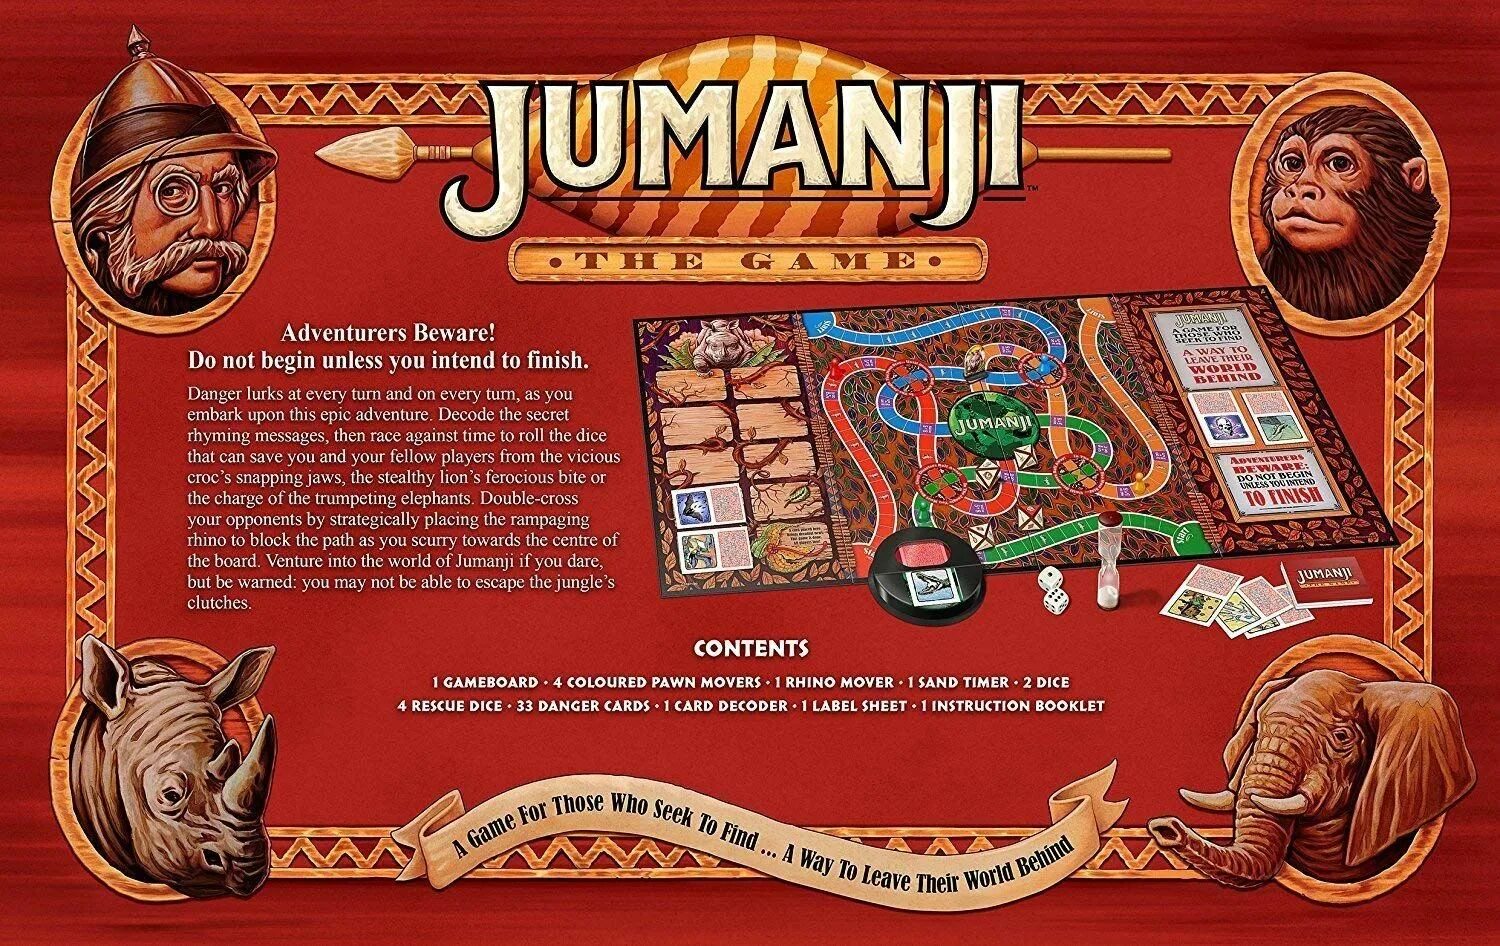 Игровое поле игры Джуманджи. Настольная игра Джуманджи. Карточки из игры Джуманджи. Джуманджи настолка.